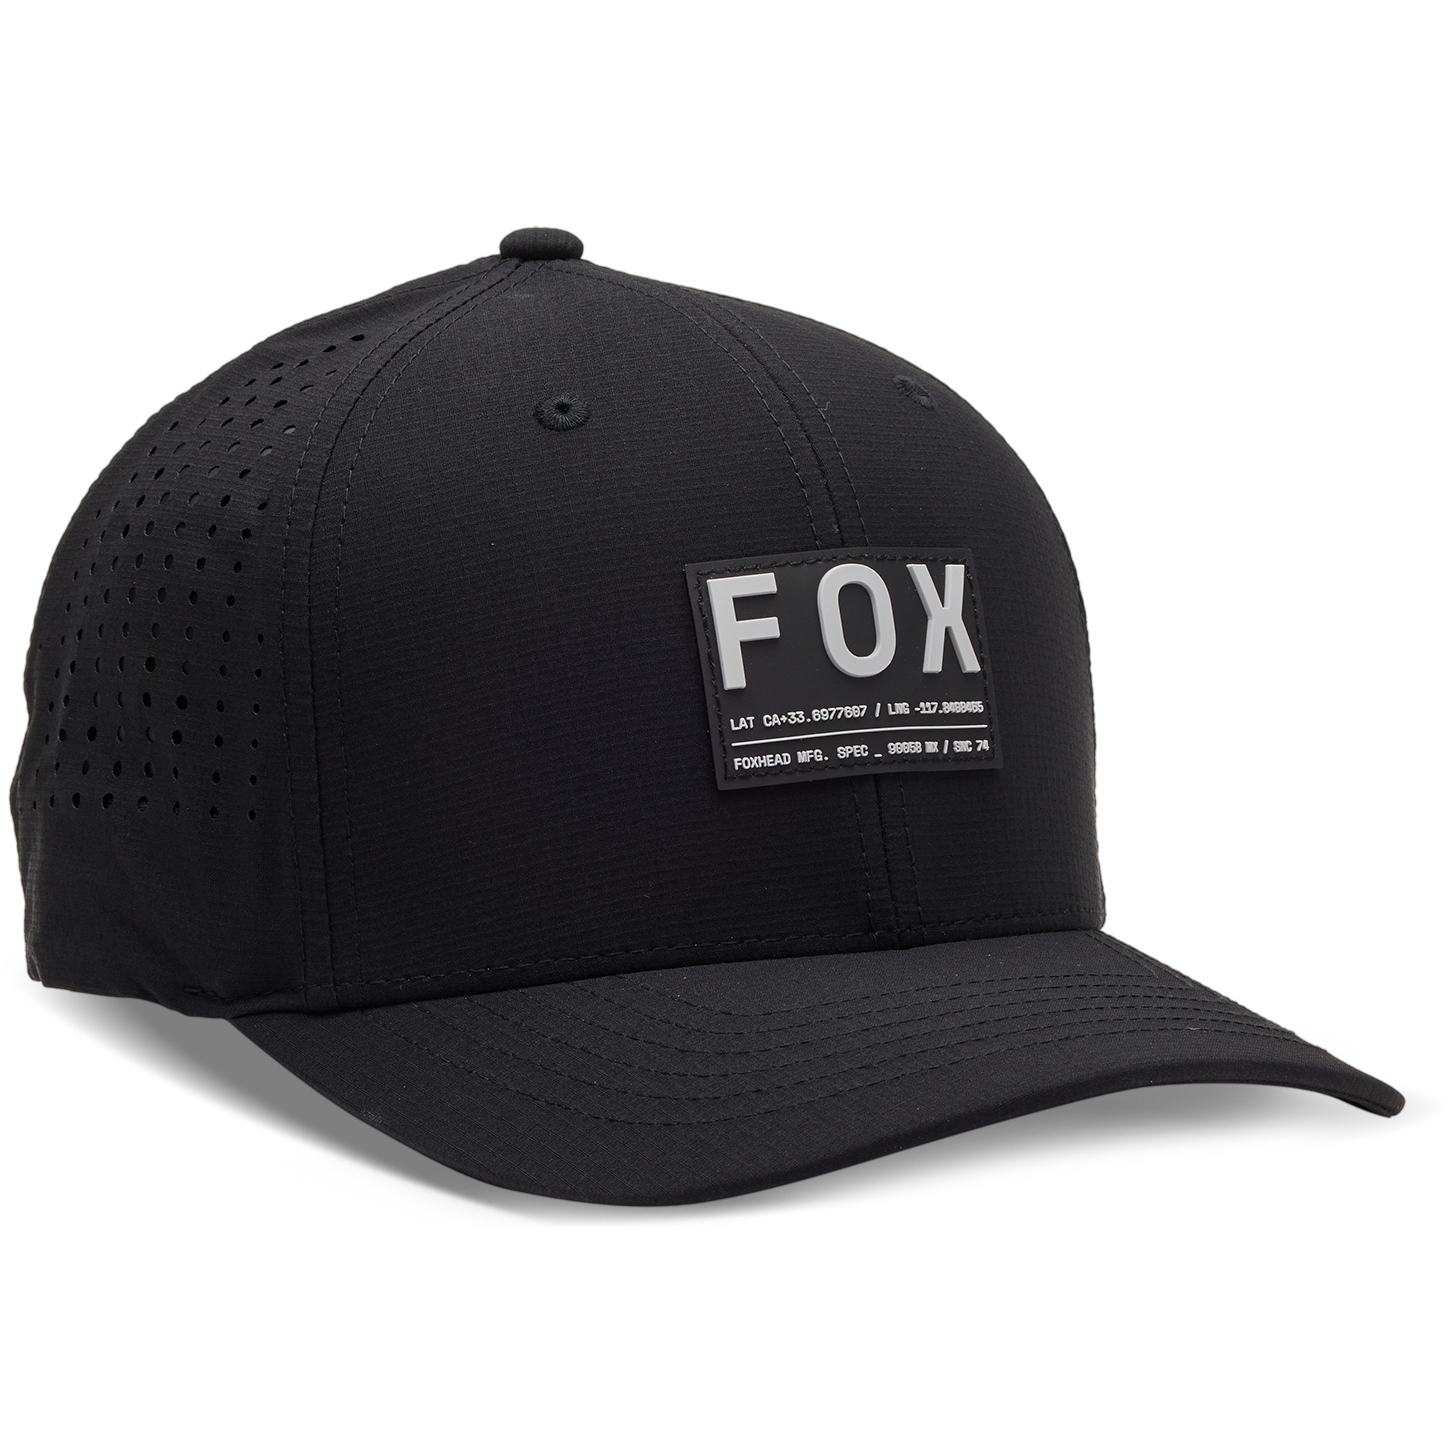 Produktbild von FOX Non Stop Tech Flexfit Kappe - schwarz